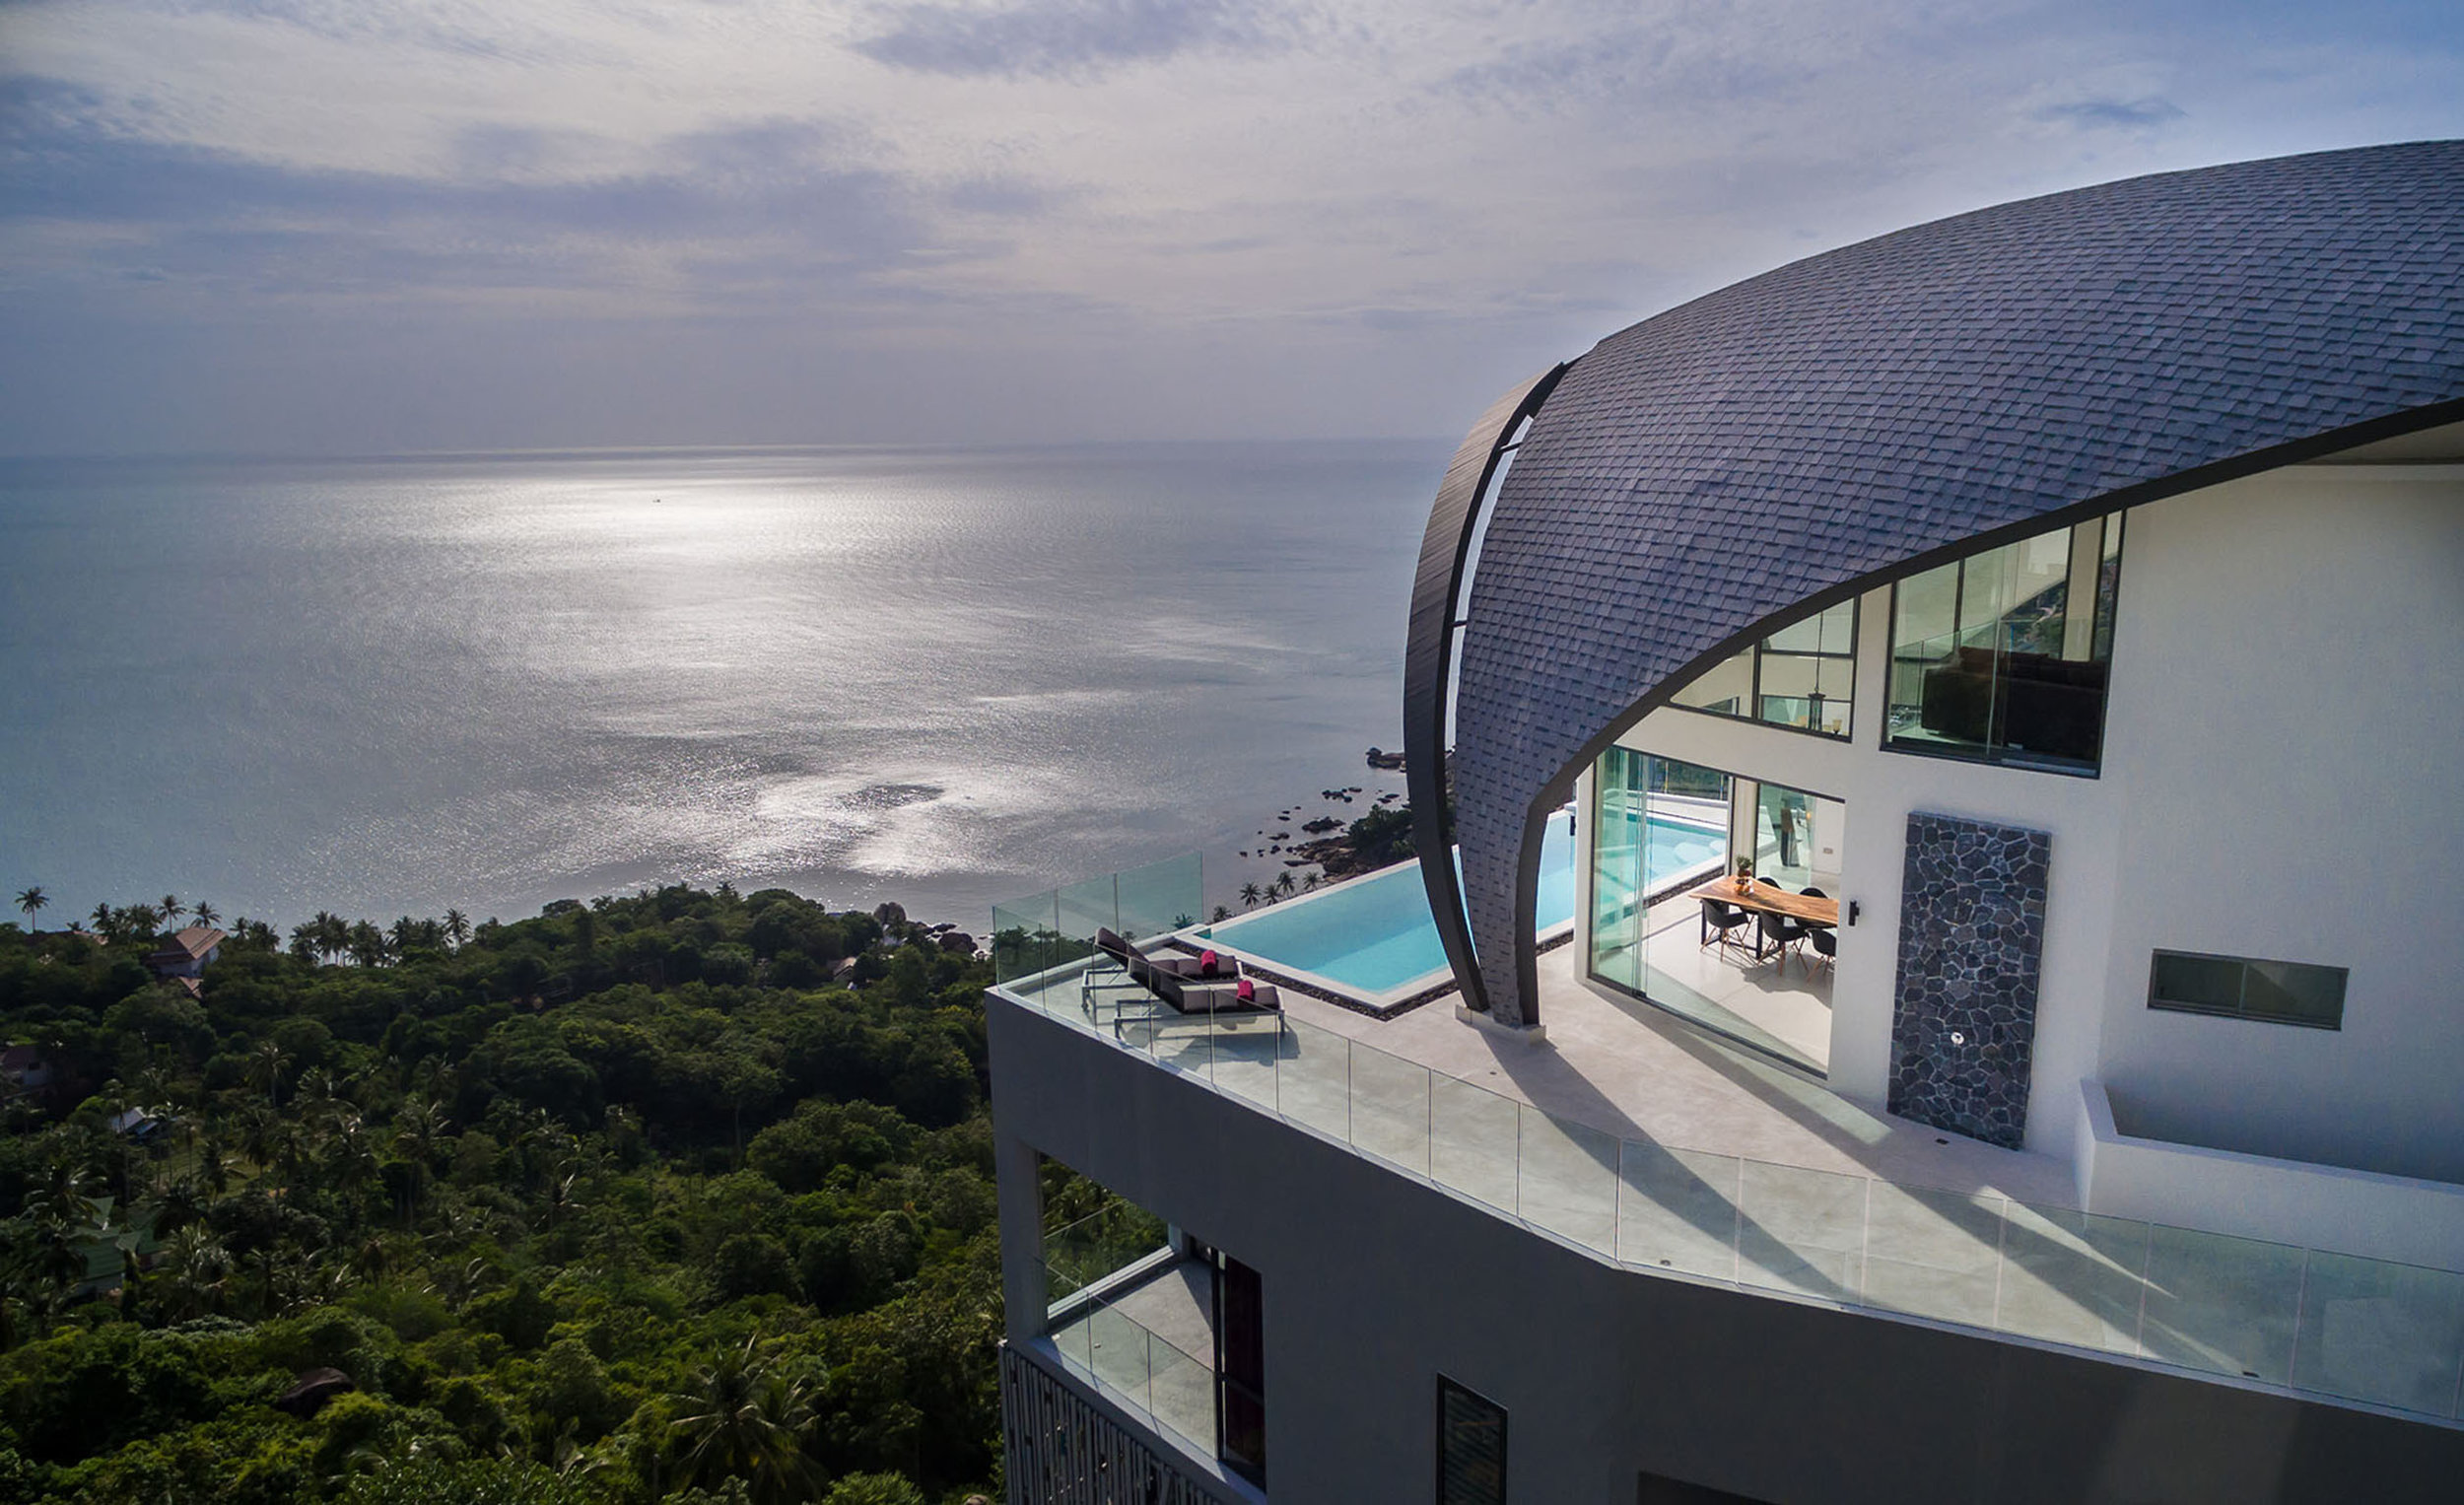 The villa overlooking the sea